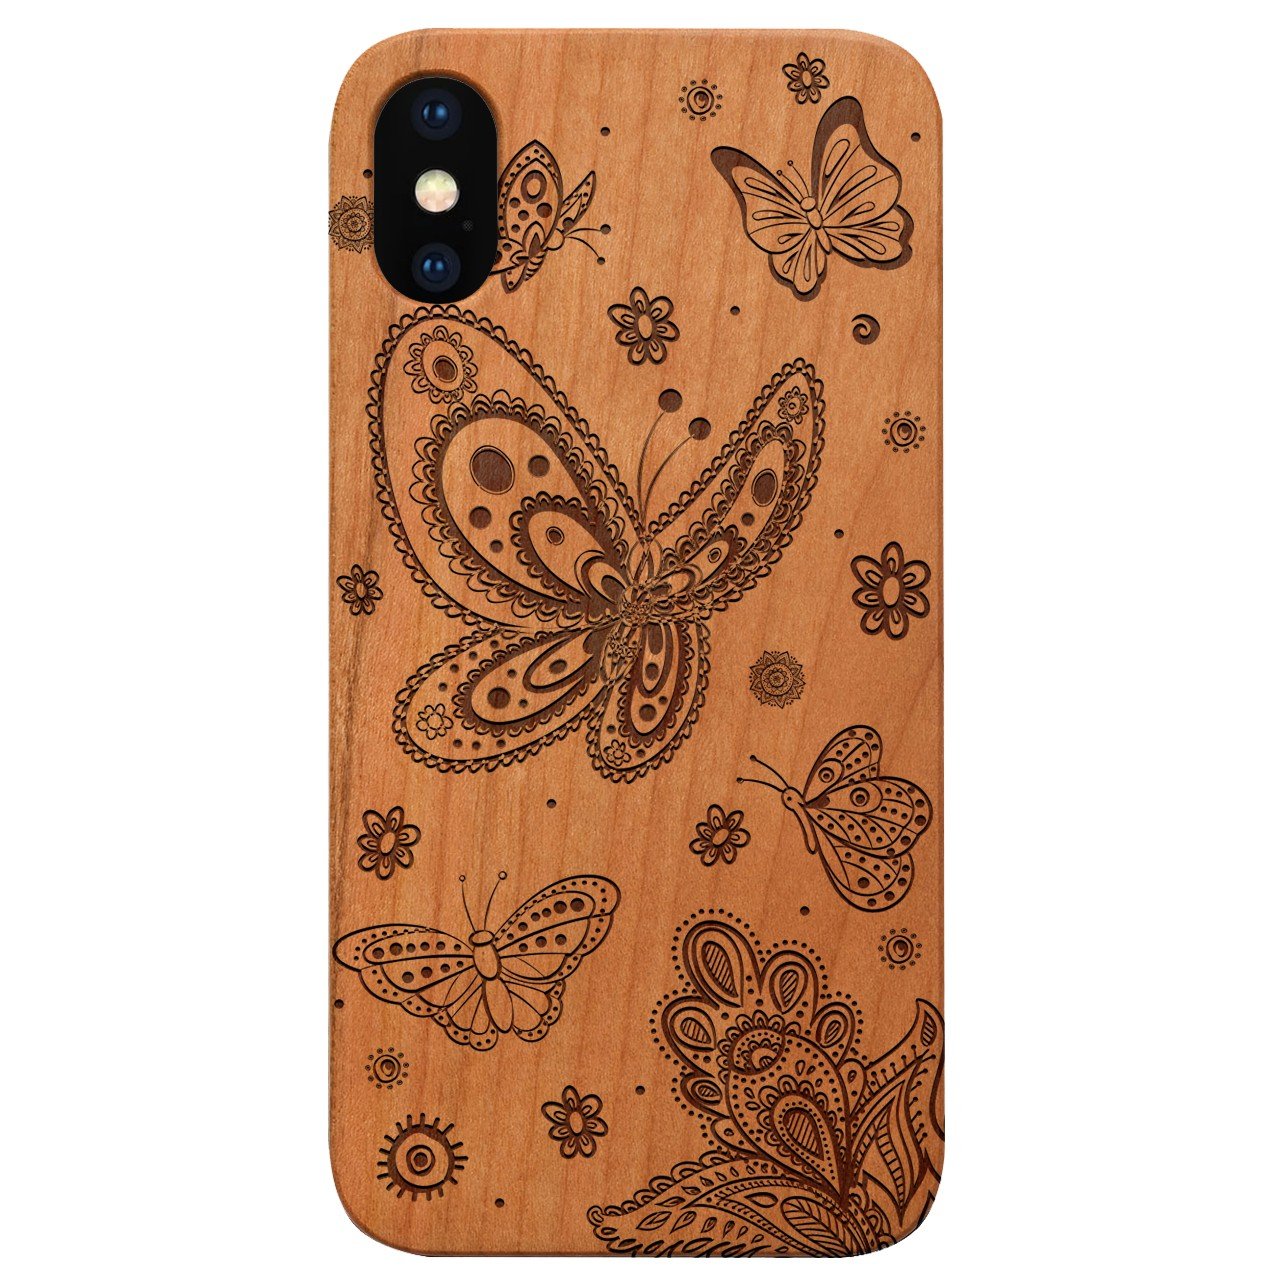 Butterflies - Engraved - Wooden Phone Case